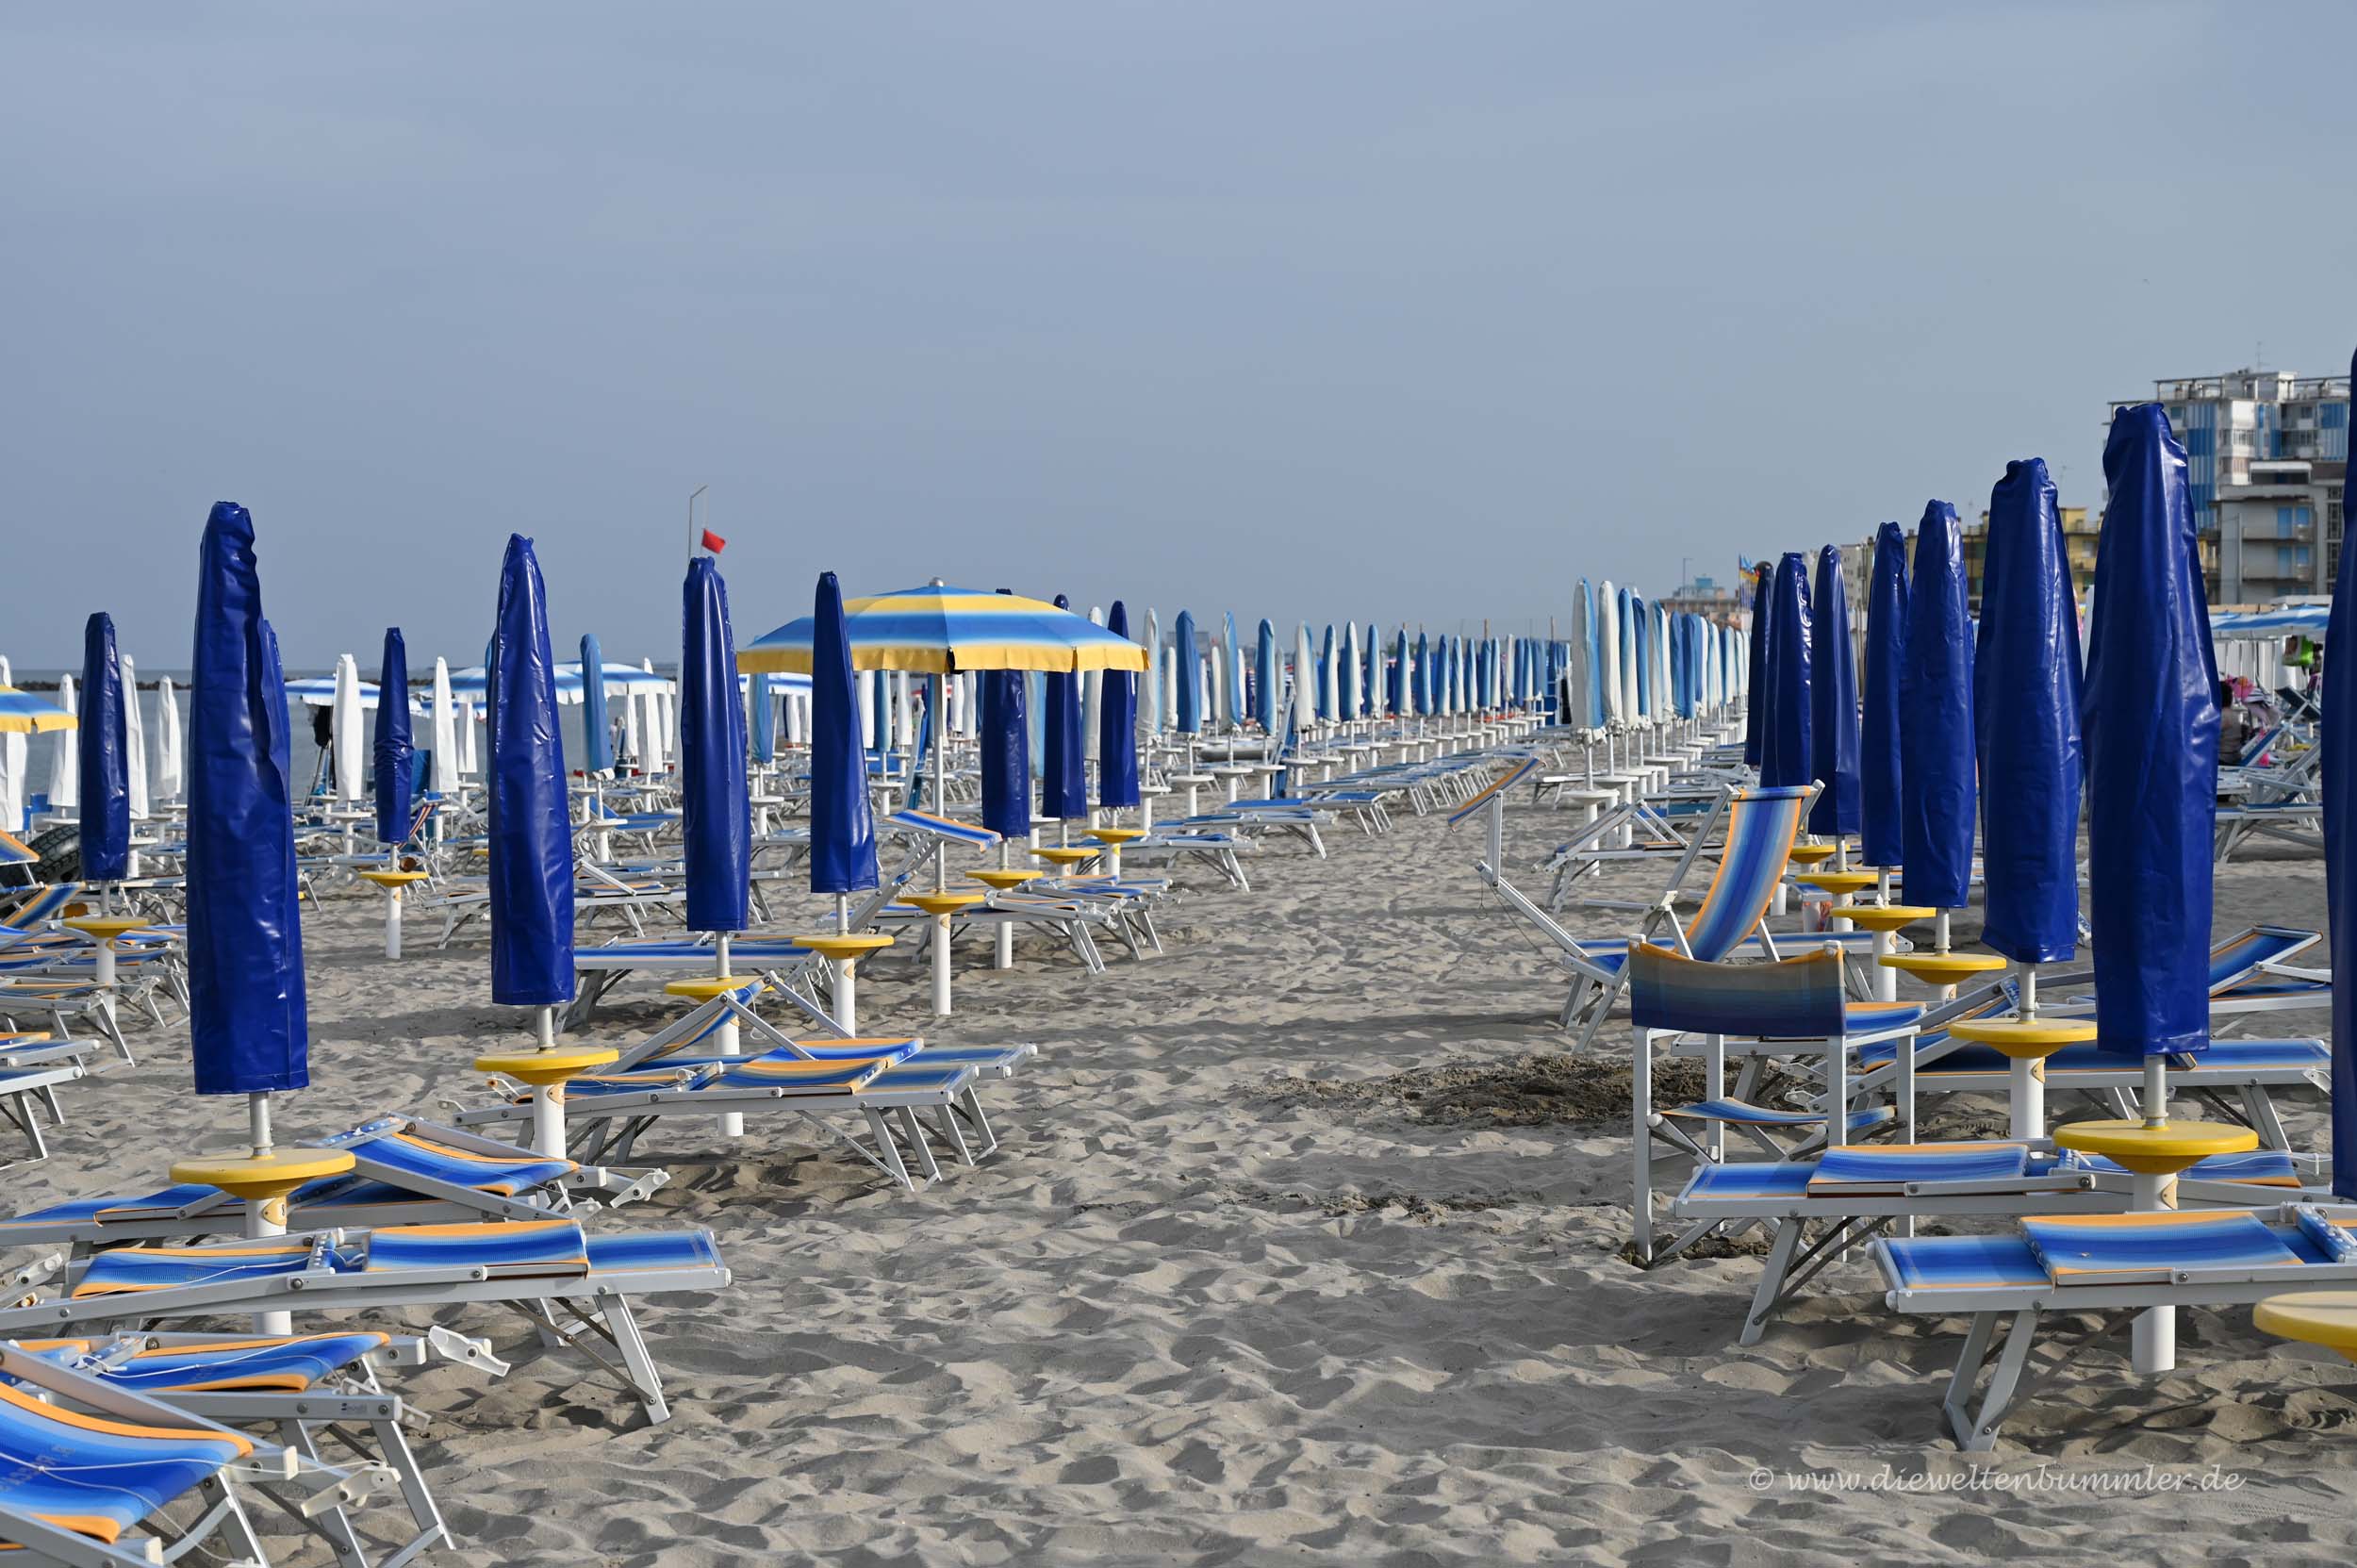 Strand von Rimini